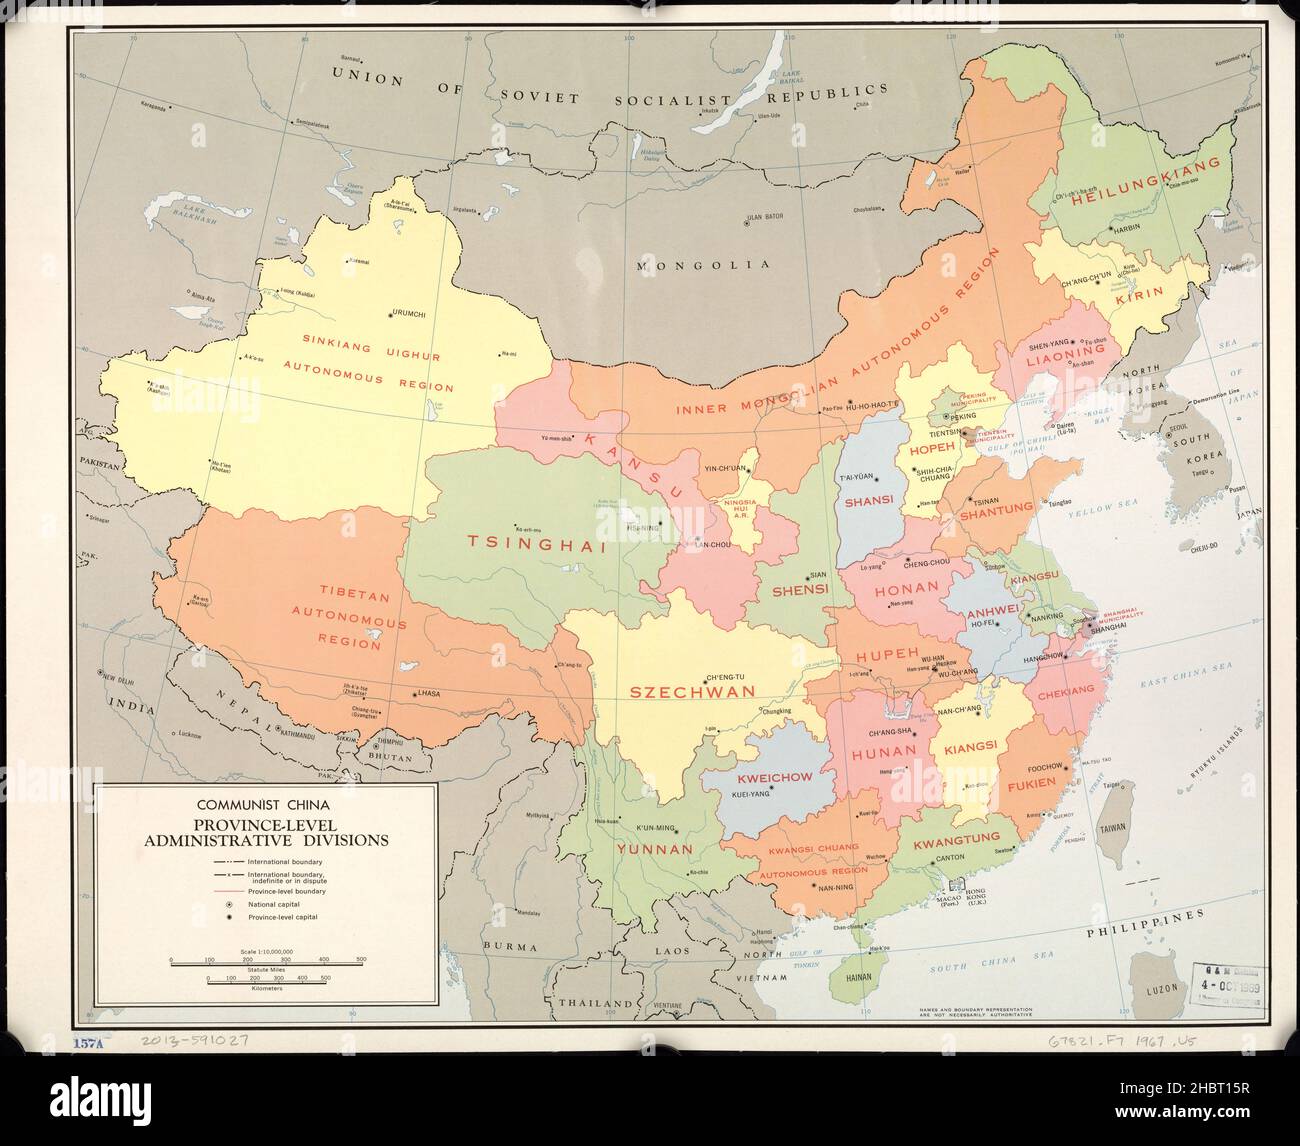 Kommunistisches China Provinz-Ebene Verwaltungsdivisionen Karte Ca. 1967 Stockfoto